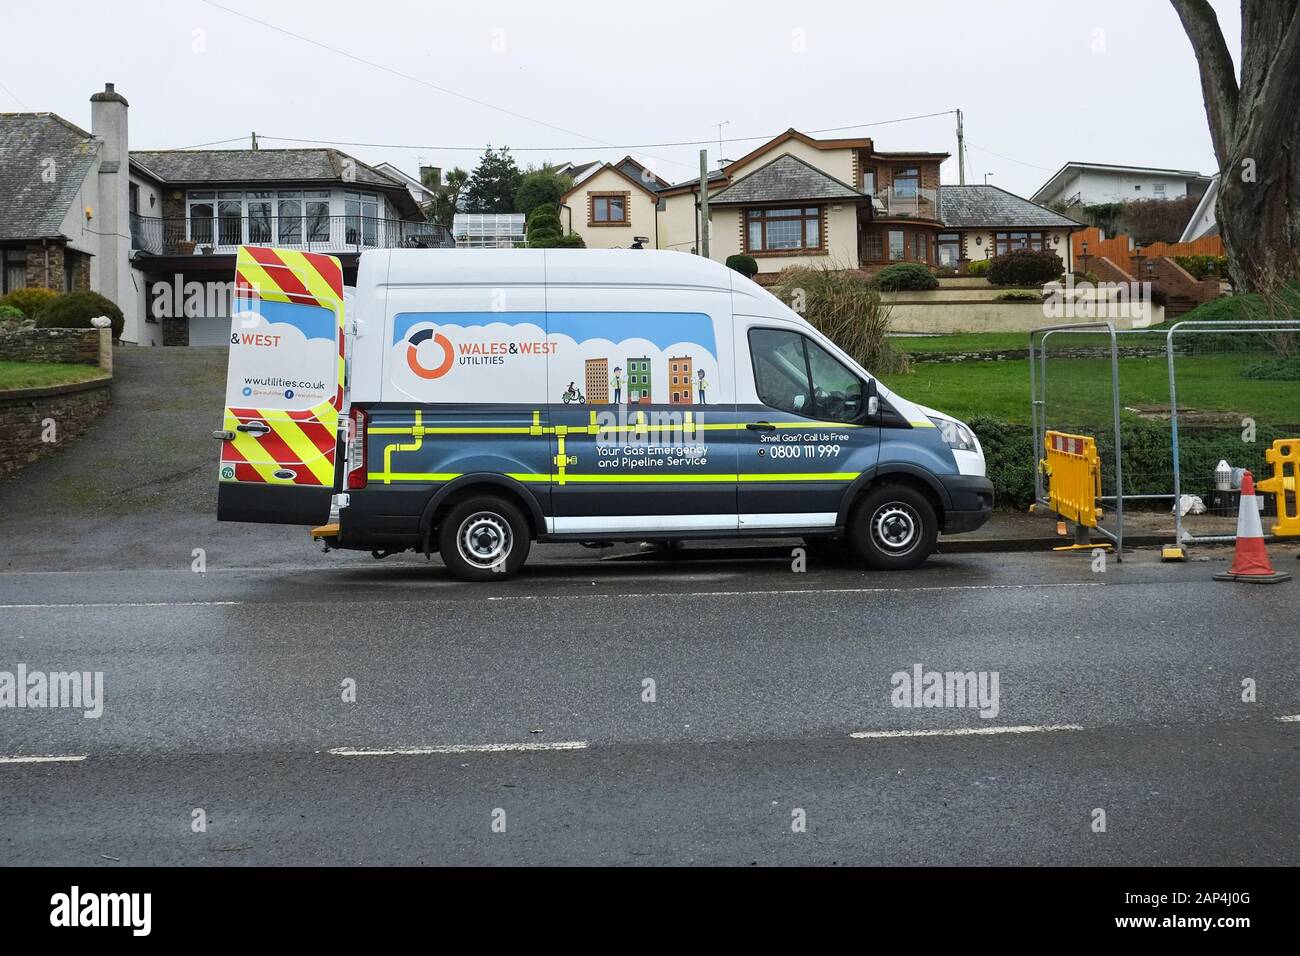 Ein Wales & West Utilities Fahrzeug van am Straßenrand in Newquay in Cornwall geparkt. Stockfoto